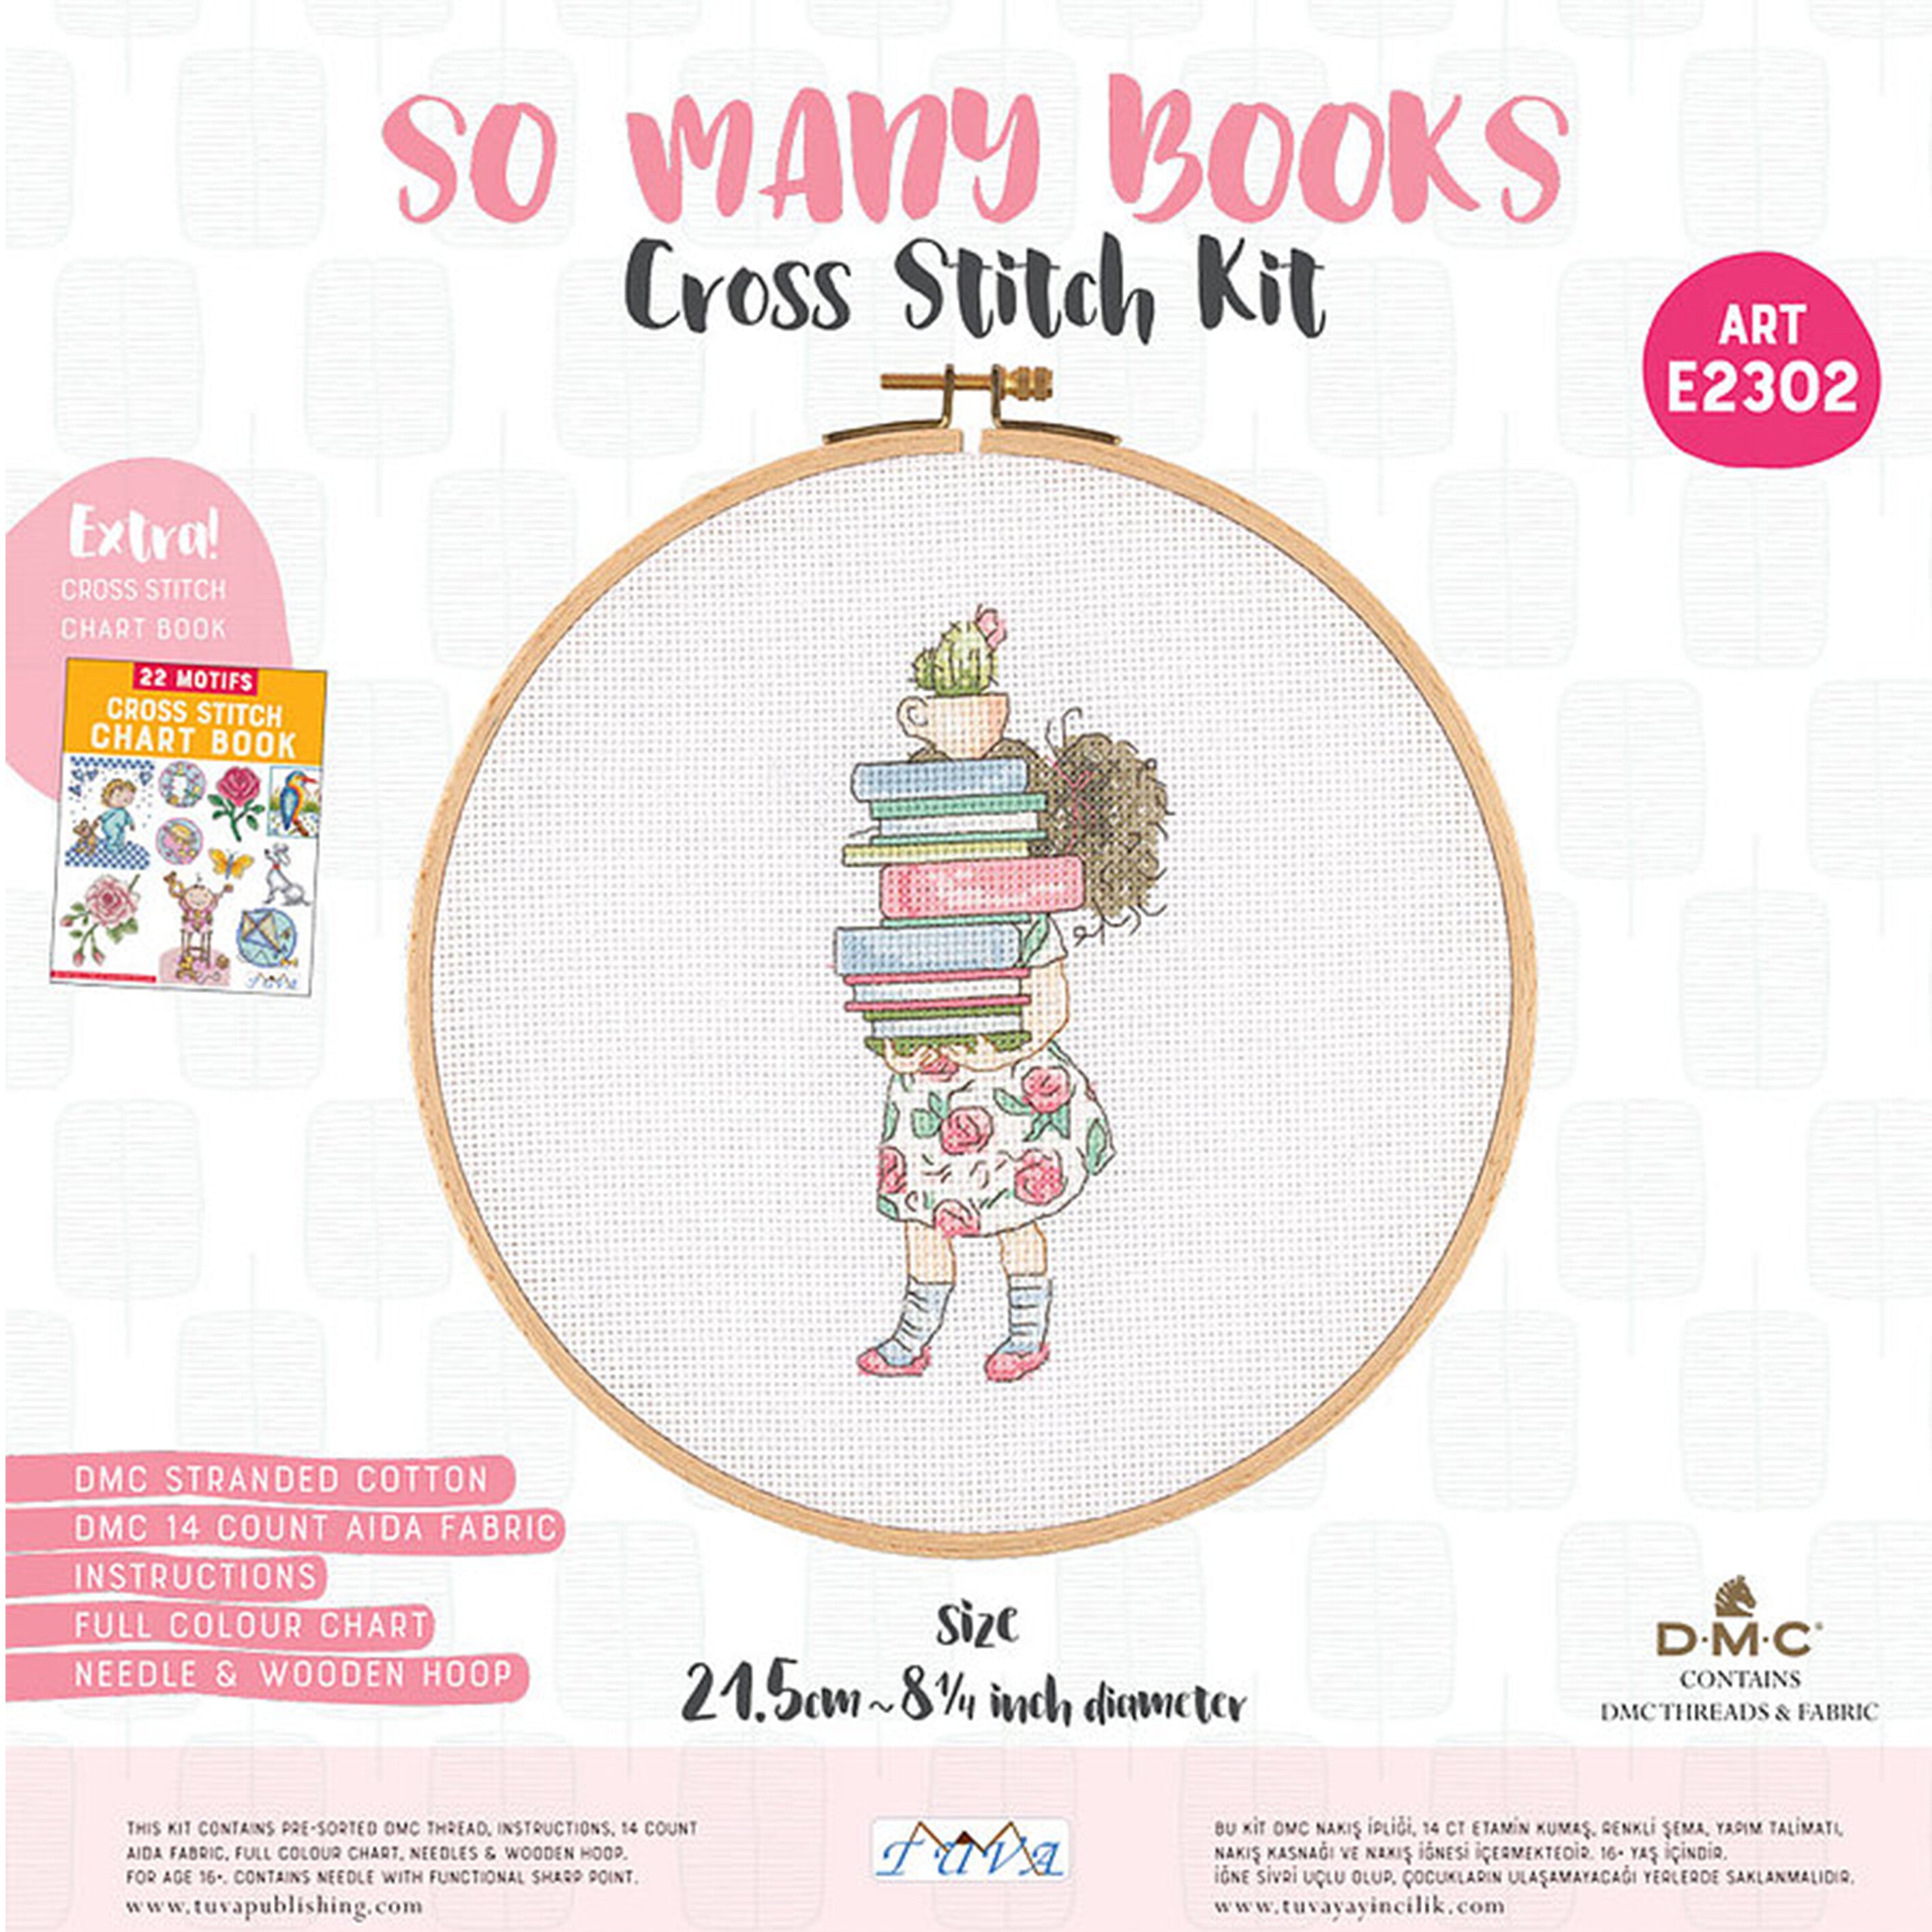 Tuva Cross Stitch Kit, So Many Books - E2302